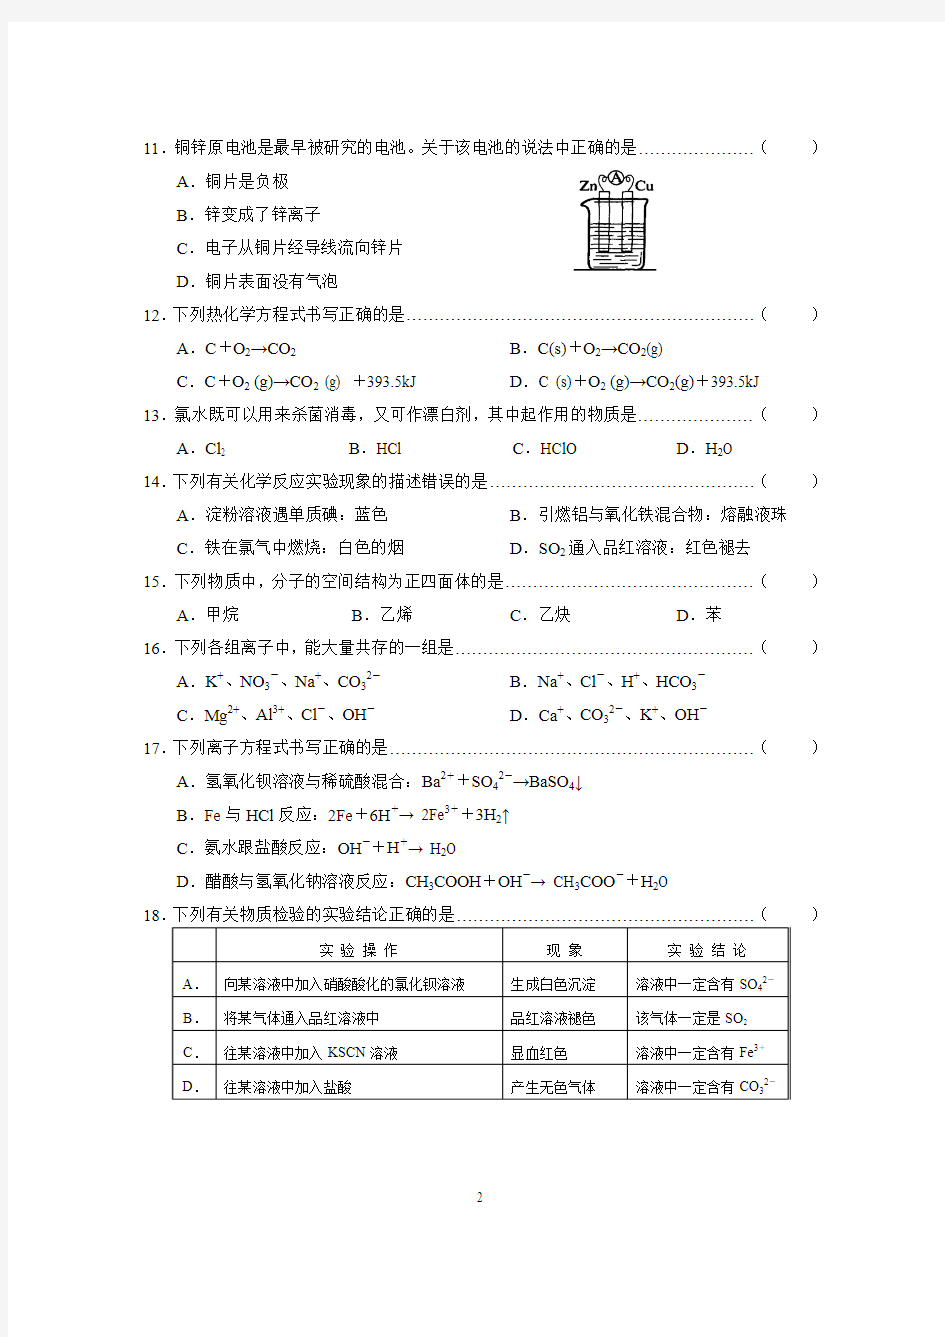 2011年上海市高中学业水平考试化学质量调研试卷及答案